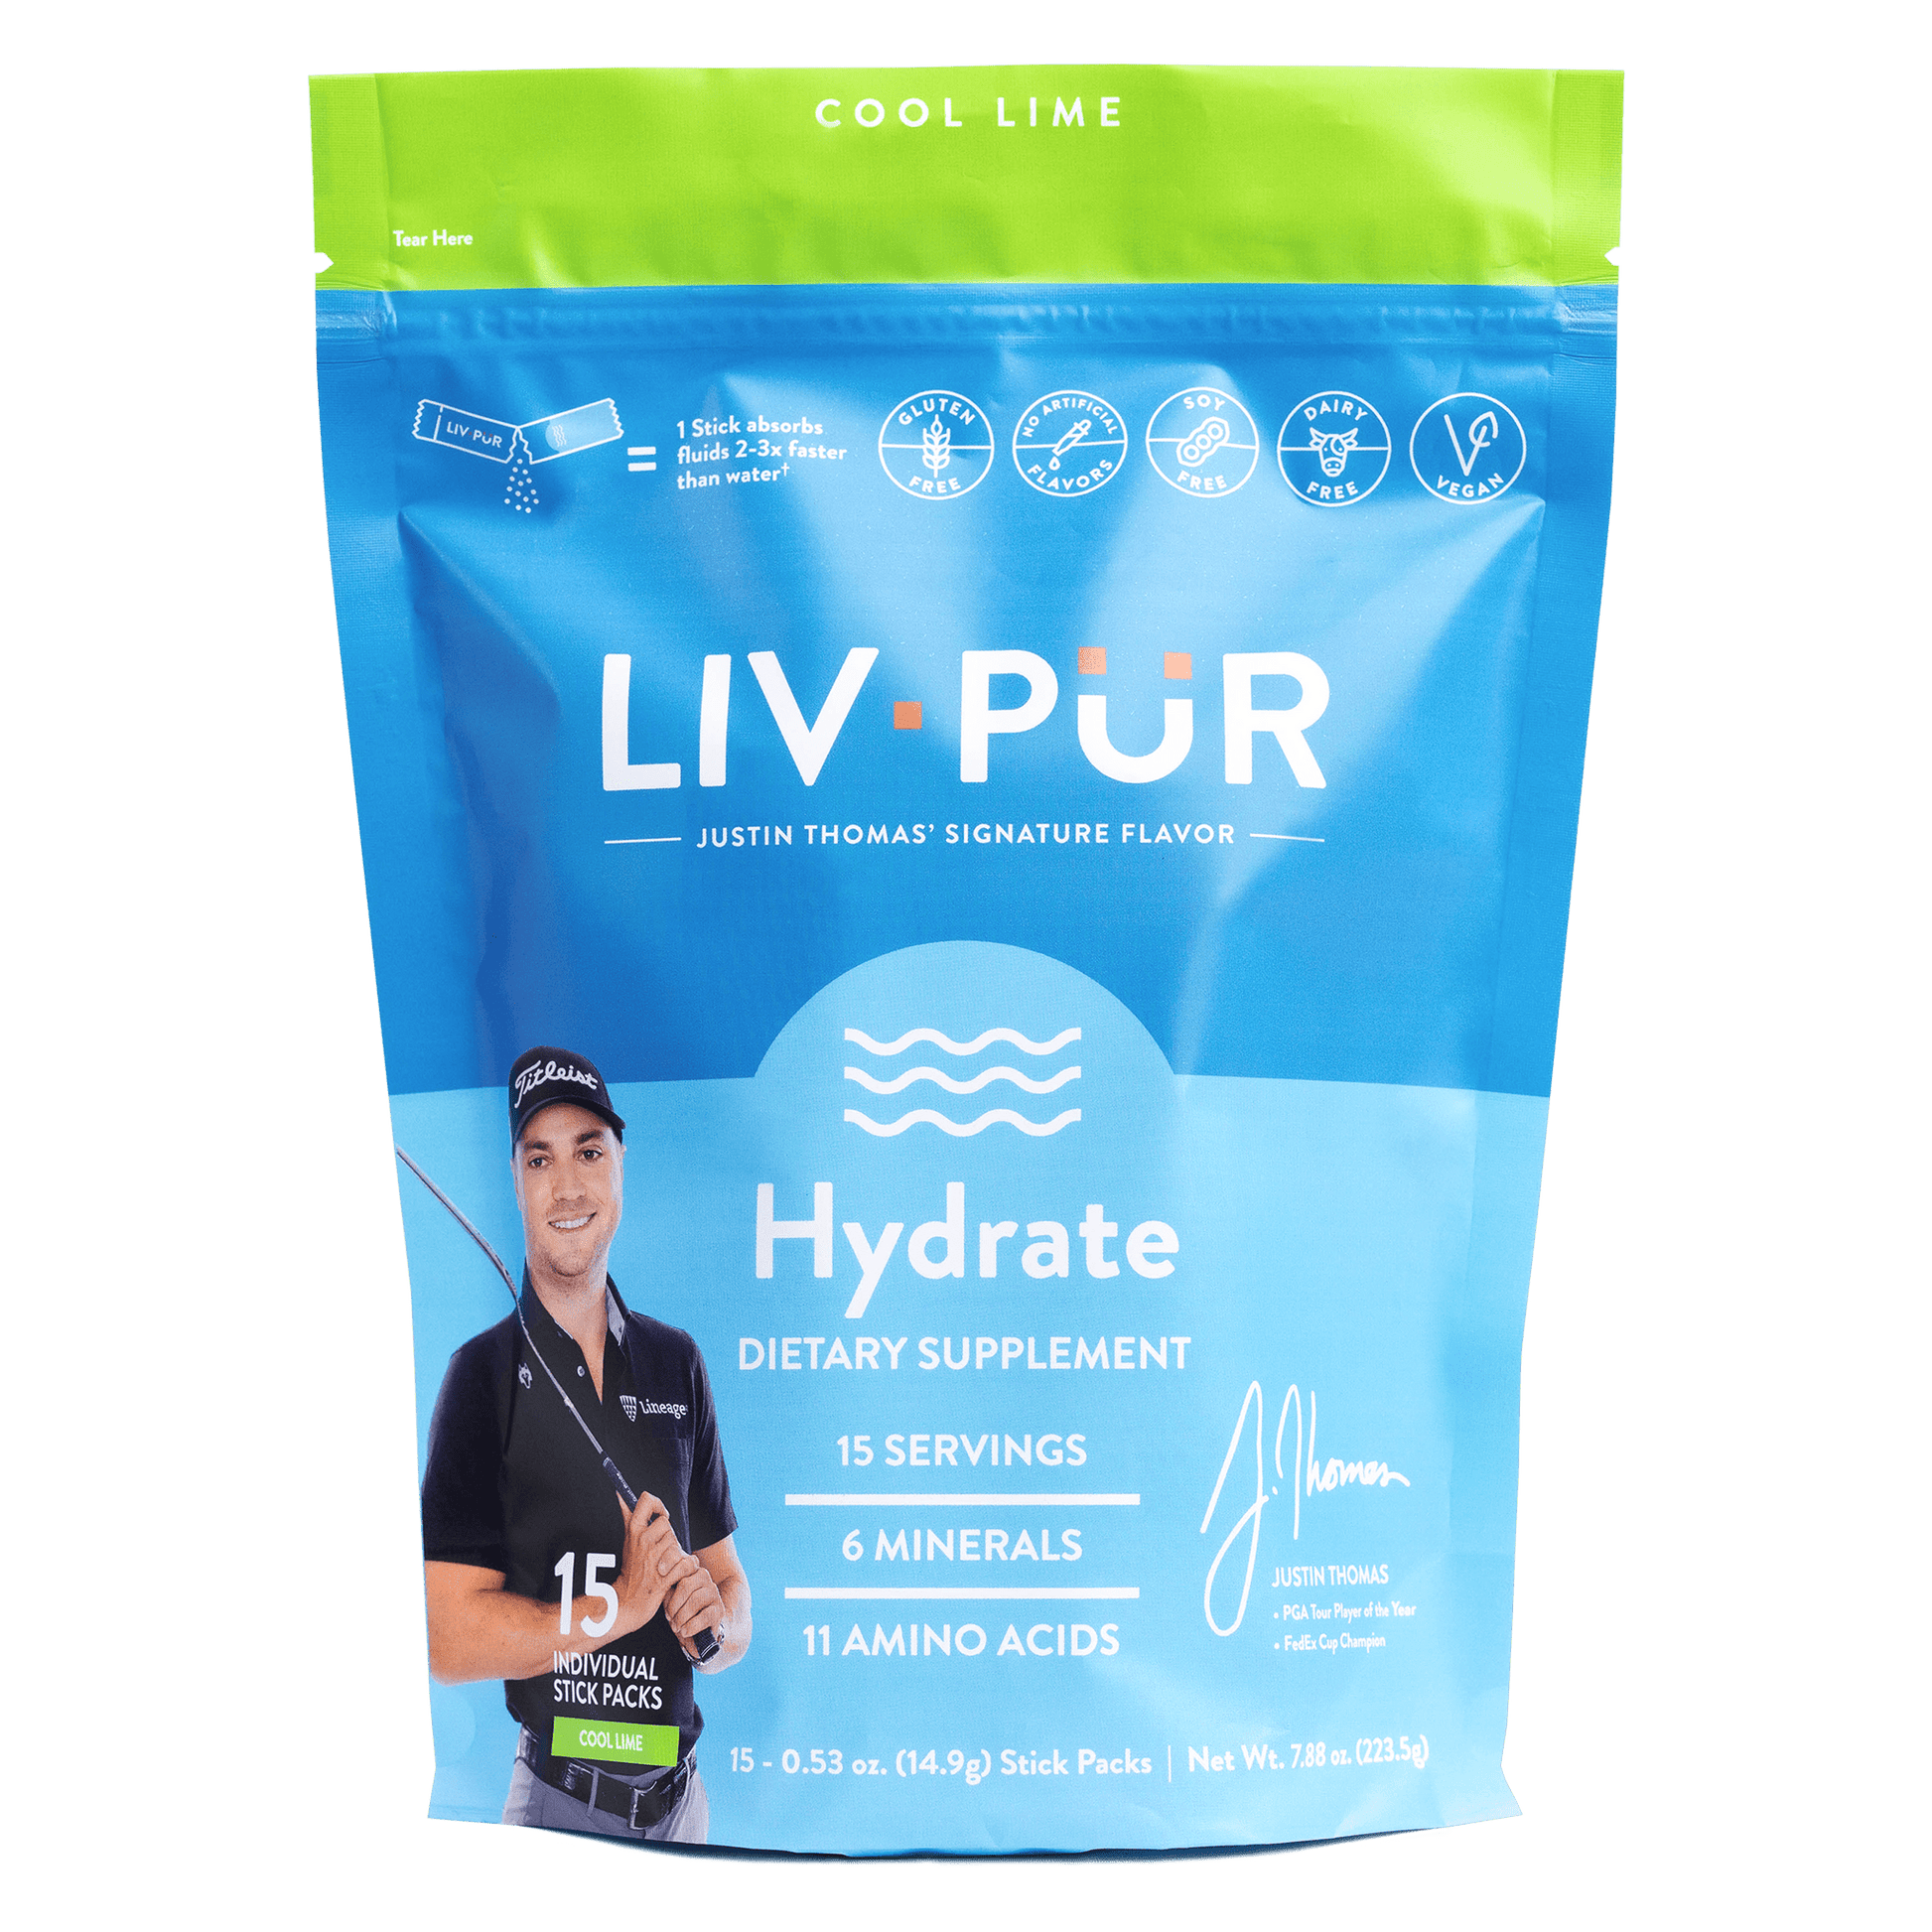 https://livpur.com/cdn/shop/files/Cool-Lime_Hydrate_LivPur-Nutrition-min.png?v=1695936175&width=1946